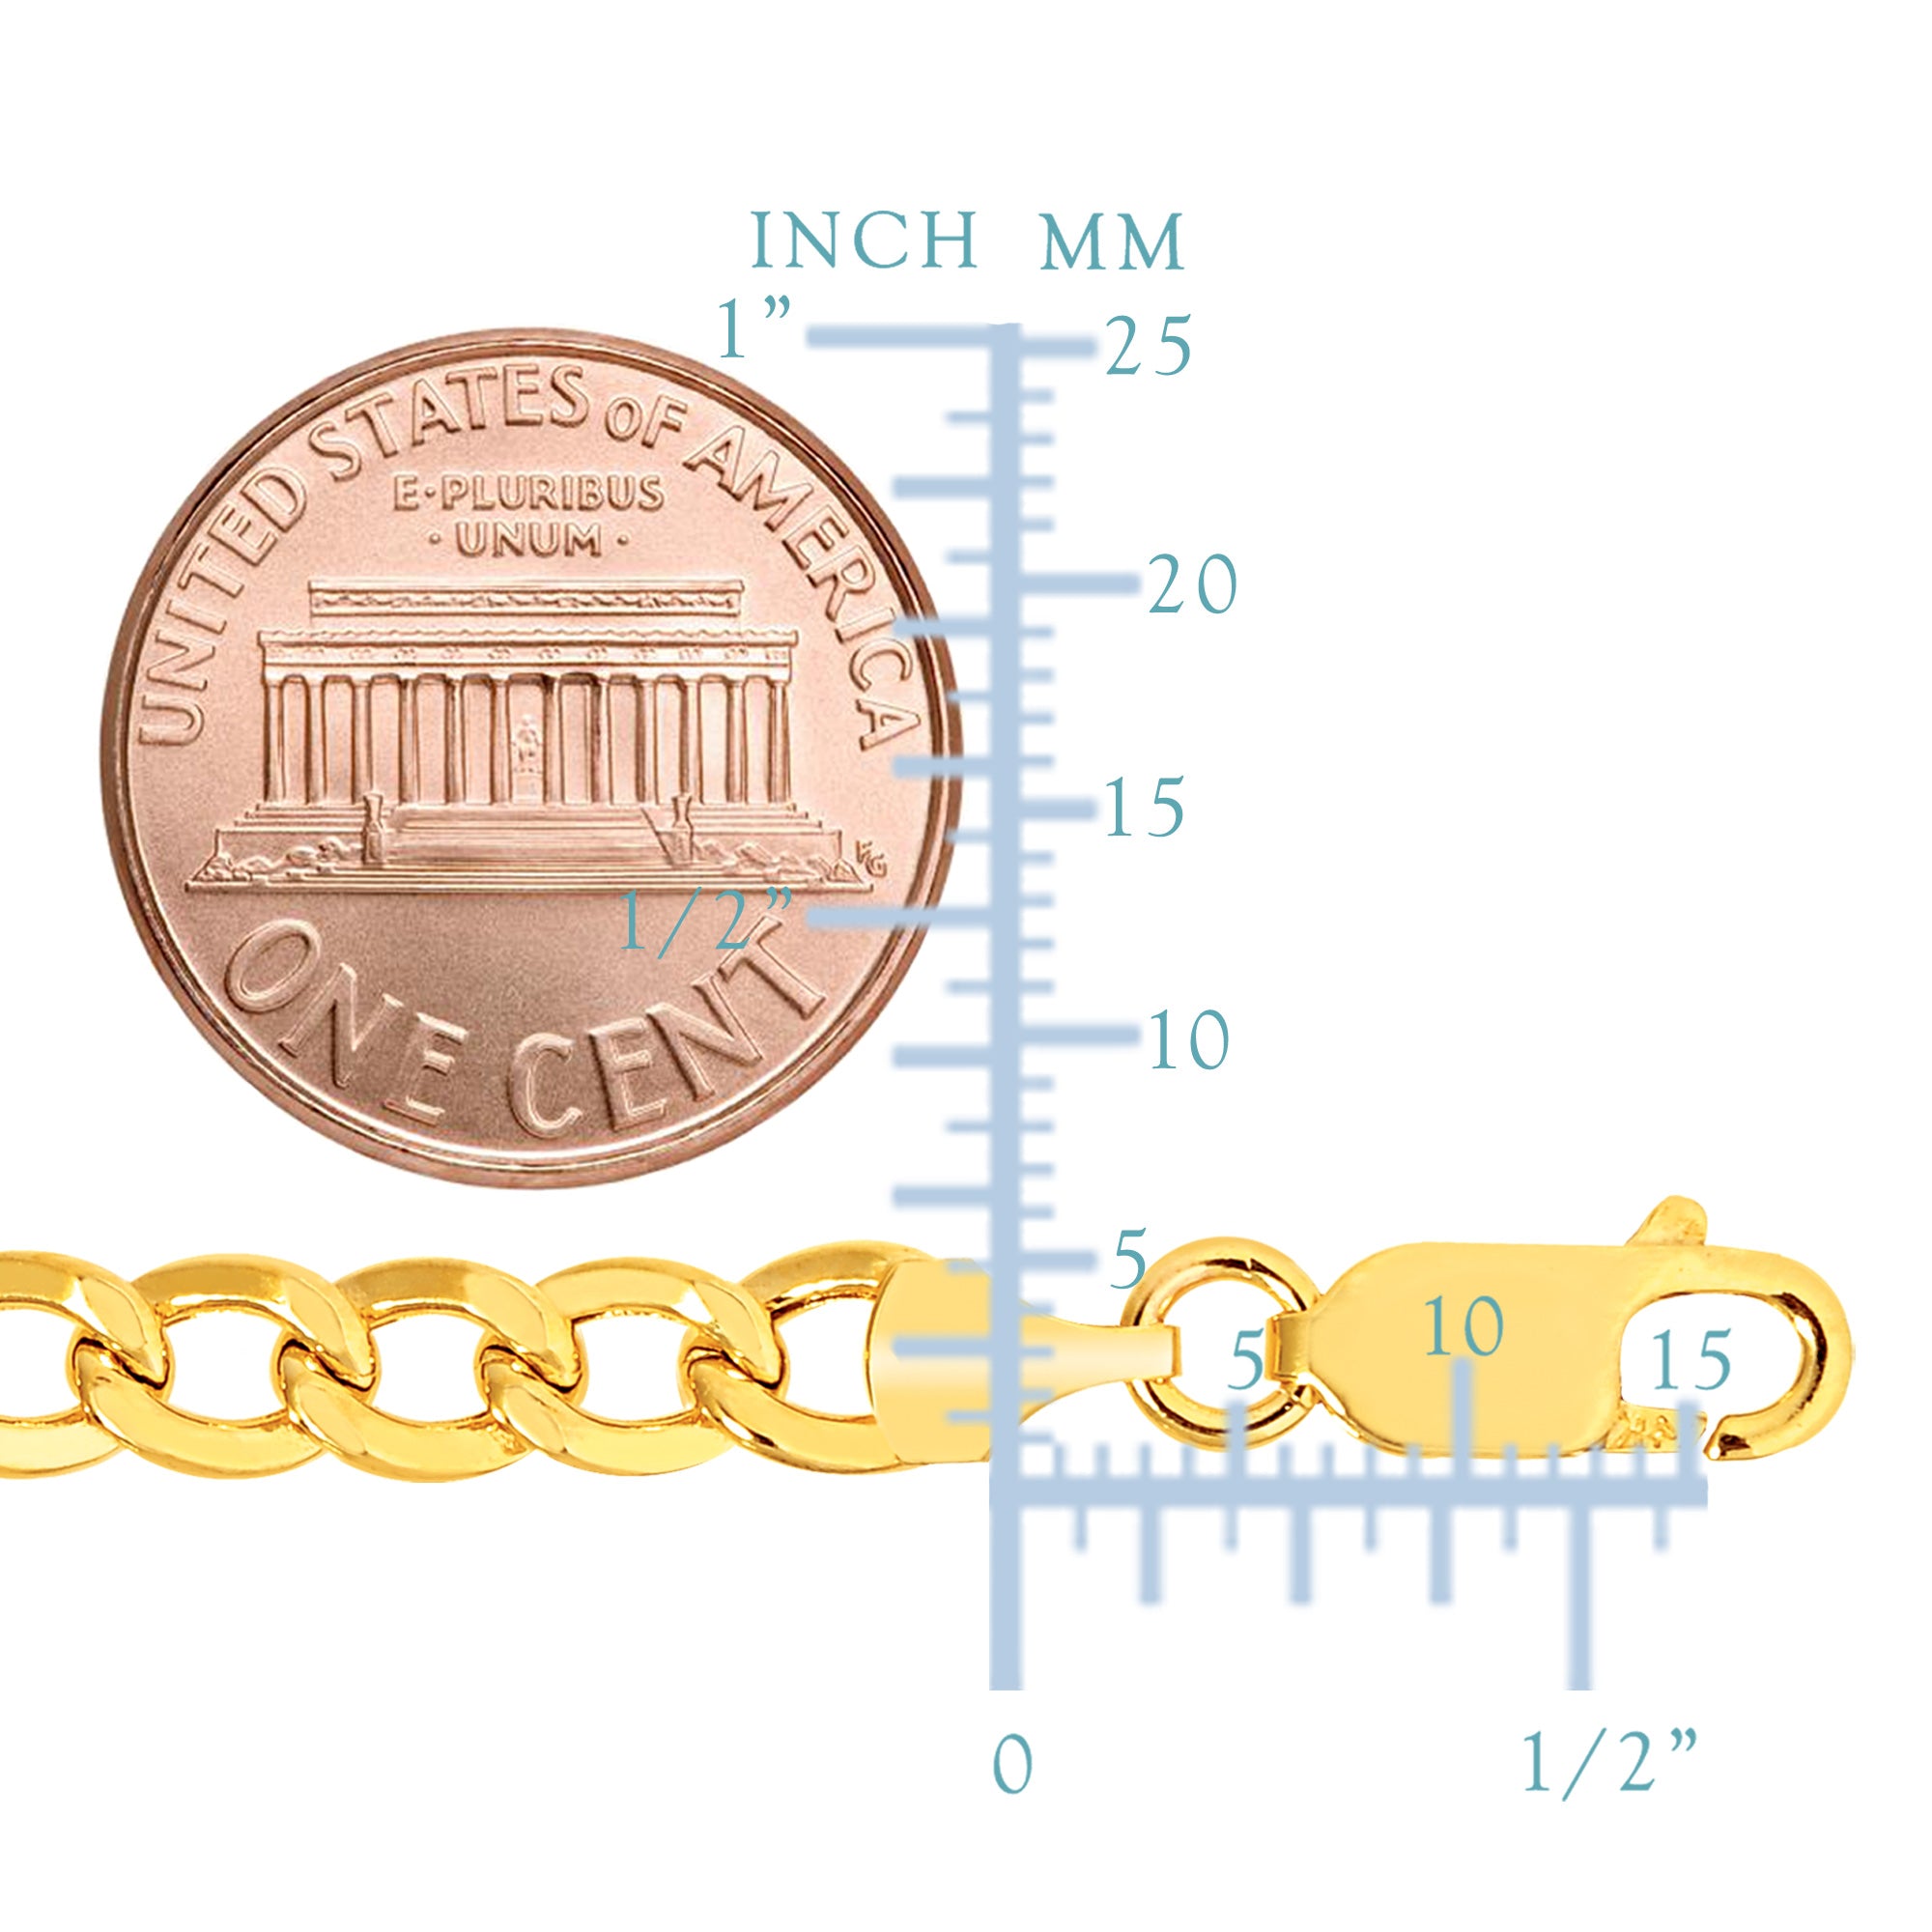 10k gult gull Curb Hollow Chain Halskjede, 5,3 mm fine designersmykker for menn og kvinner